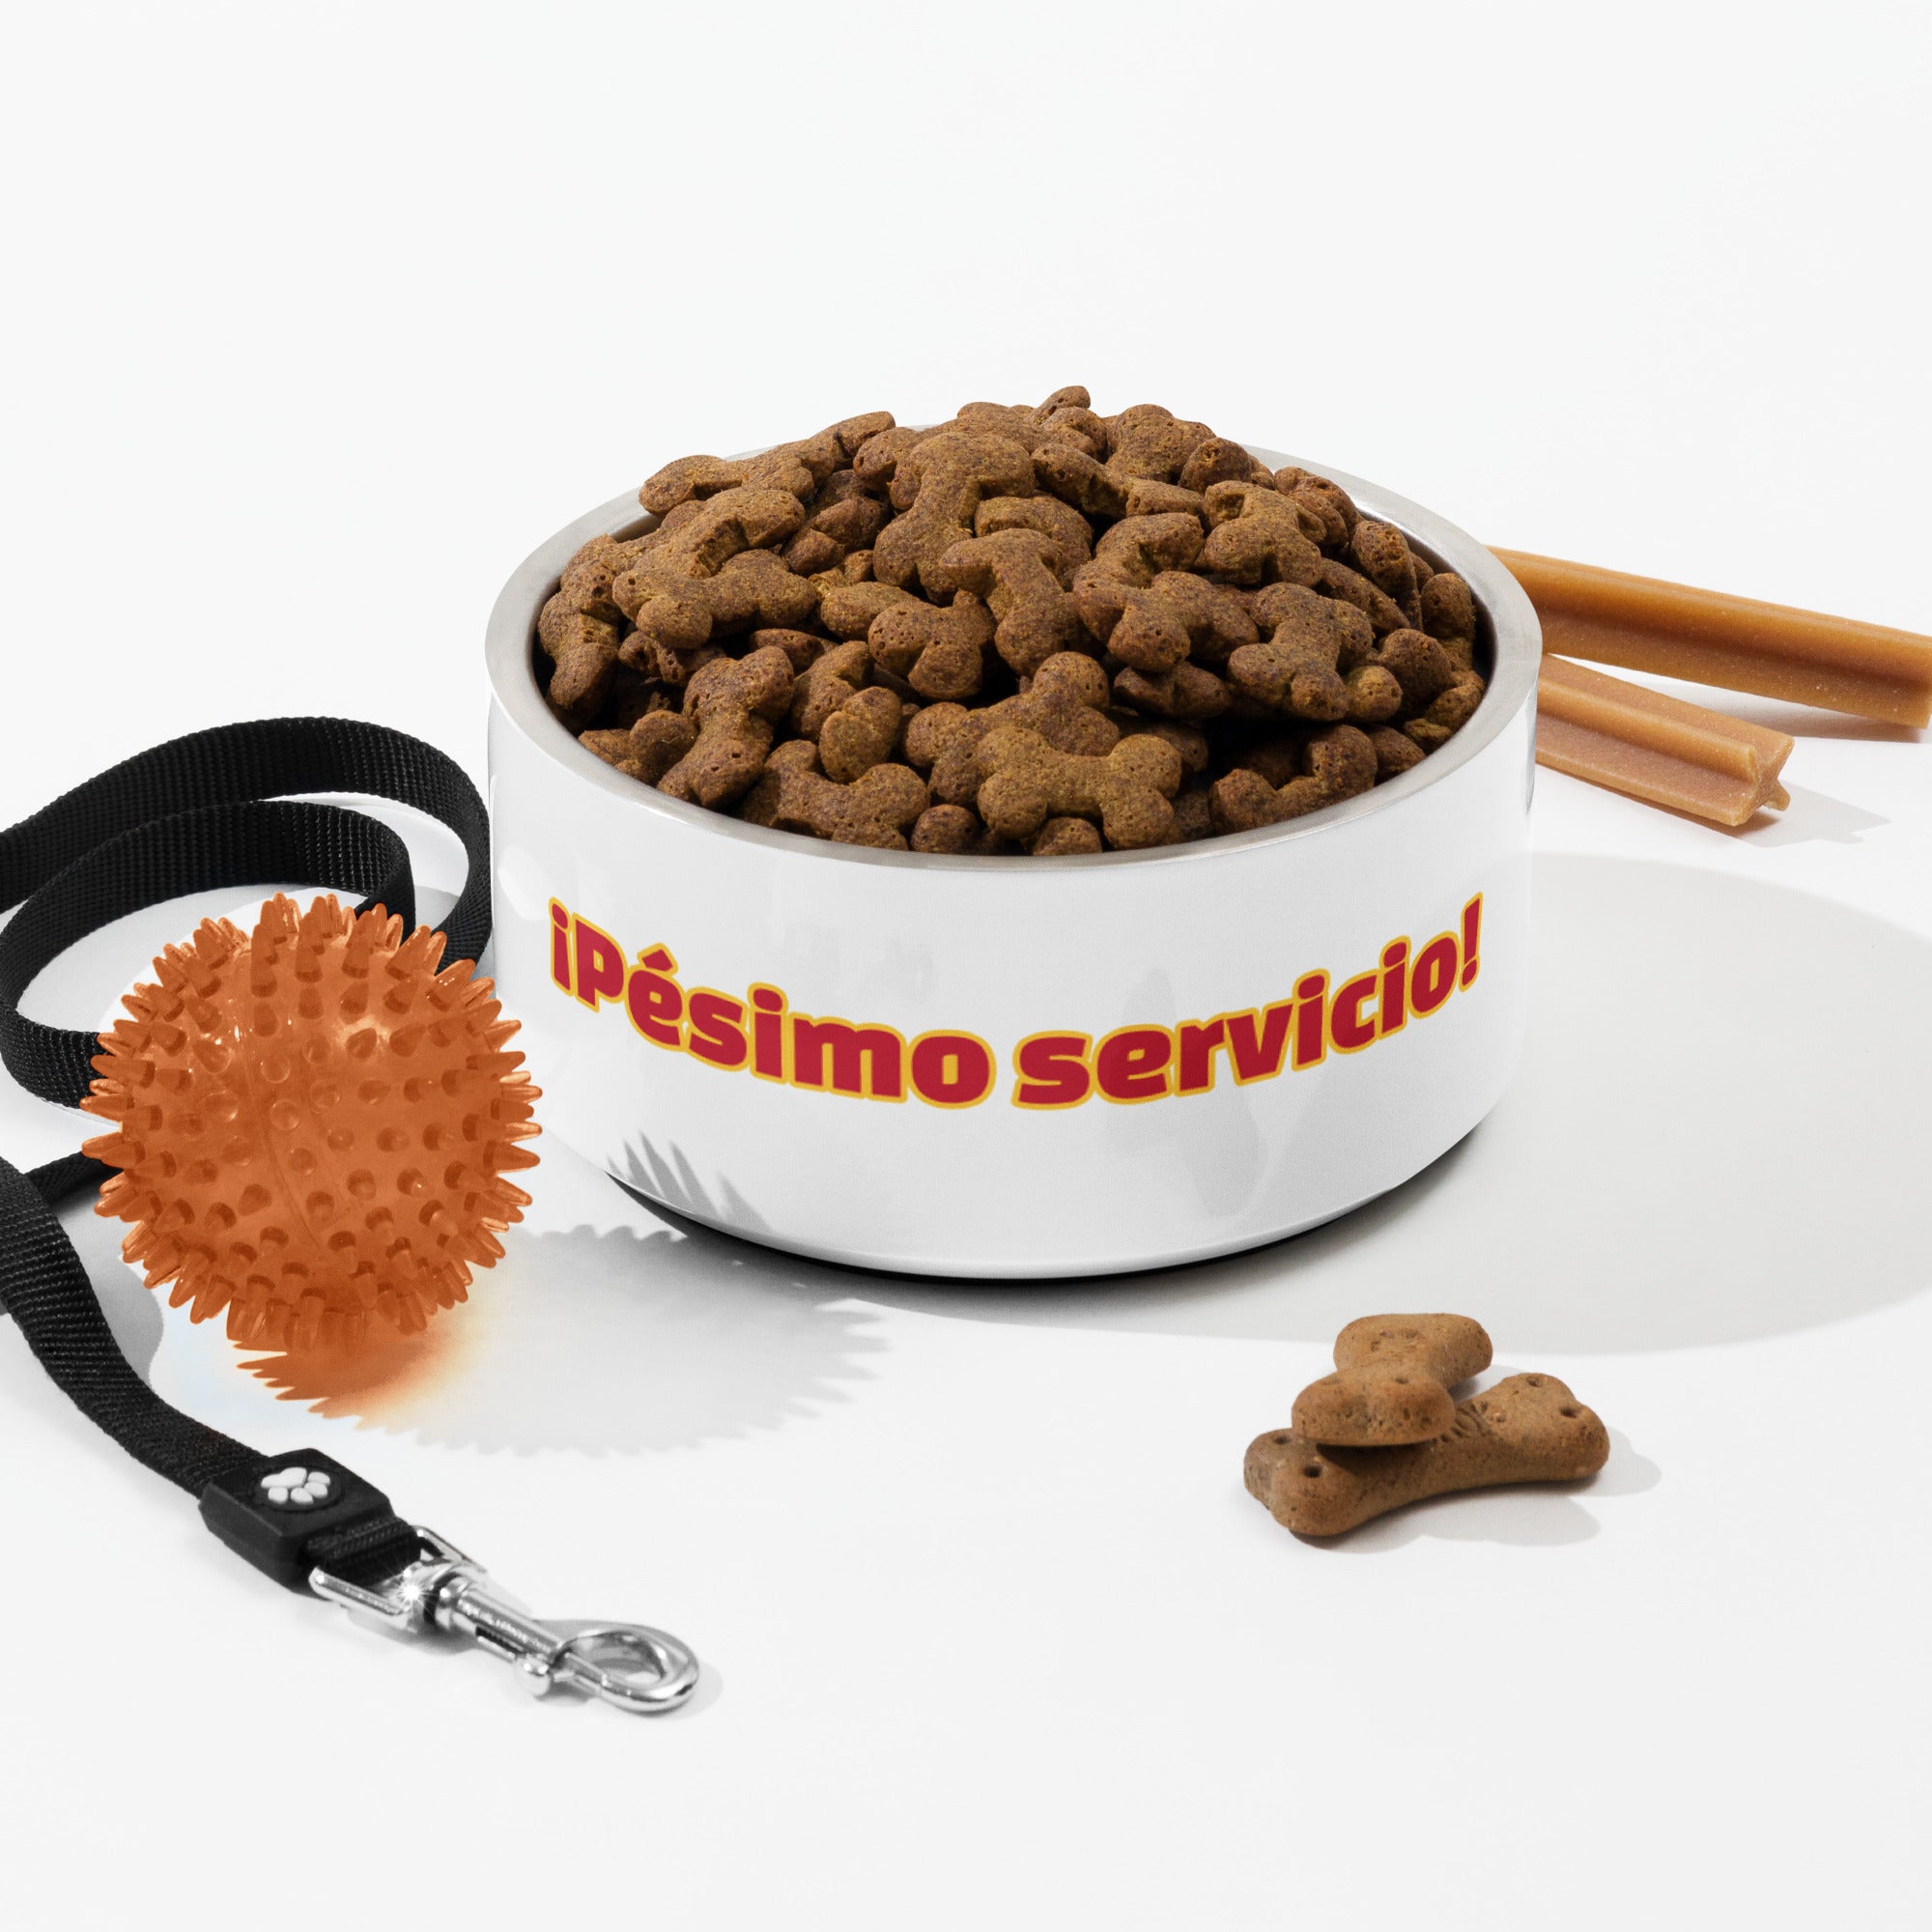 ¡Pésimo servicio! | Plato para mascota